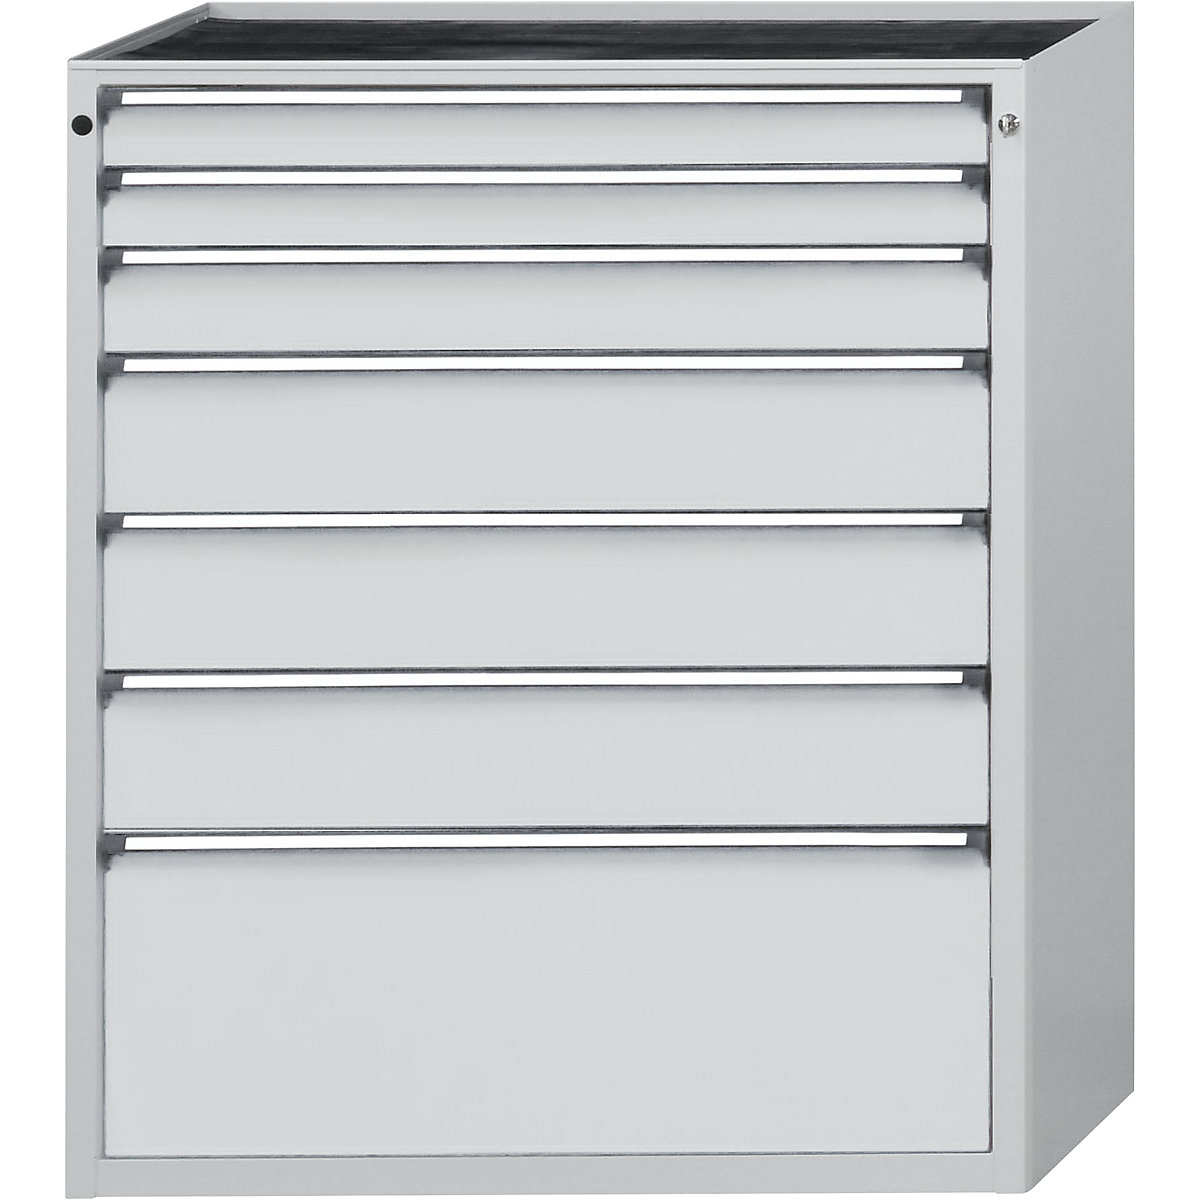 ANKE – Armoire à tiroirs, l x p 1060 x 675 mm, 7 tiroirs, hauteur 1280 mm, façade gris clair